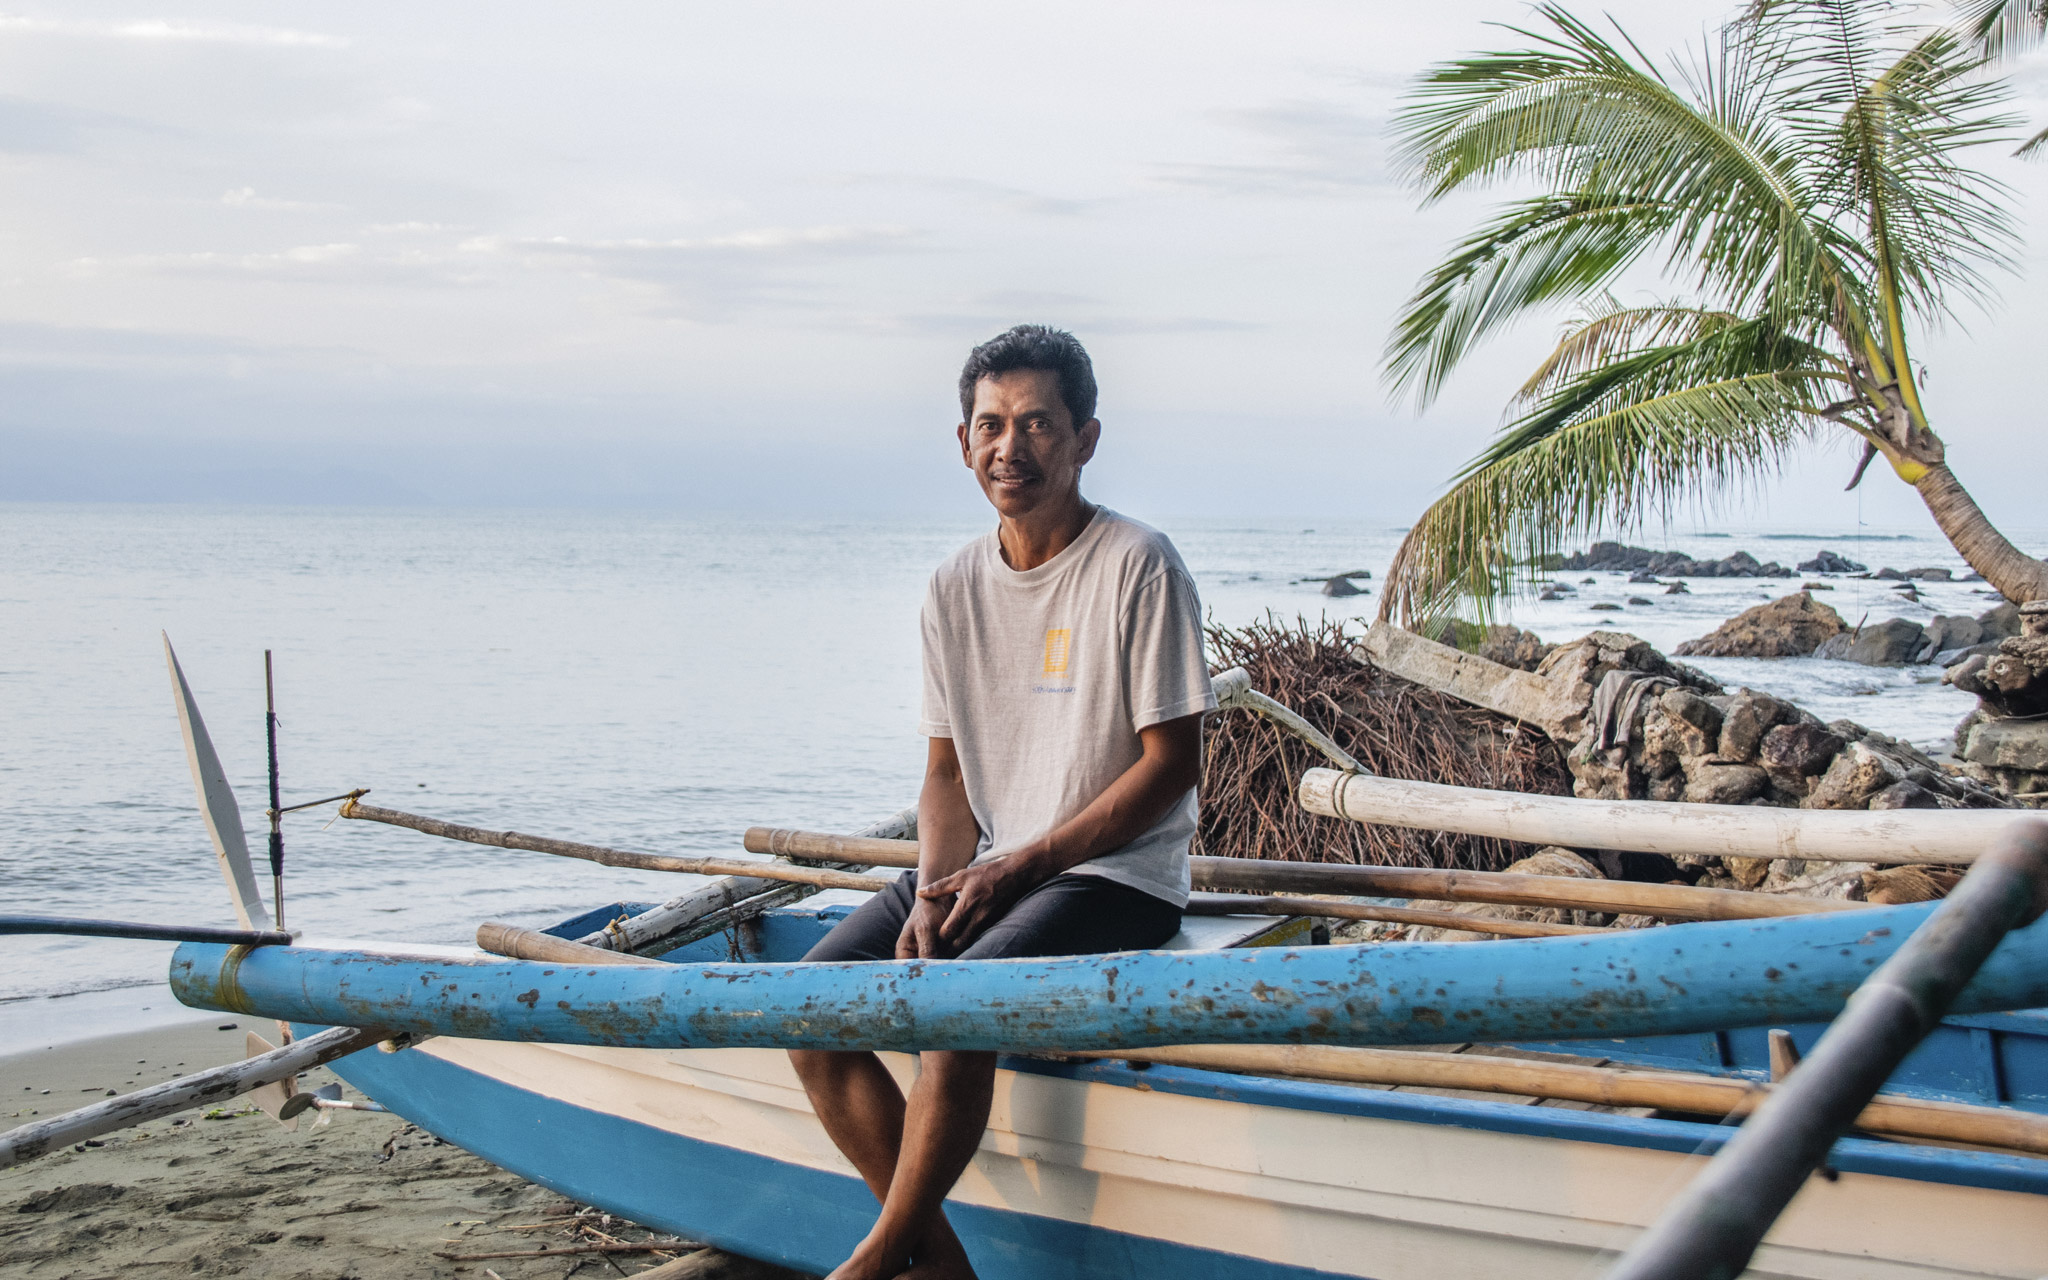 Filippiiniläinen kalastaja Expedito Rica Jr. haaveilee siitä, että voisi ostaa isomman veneen ja että lapset menestyisivät elämässä.